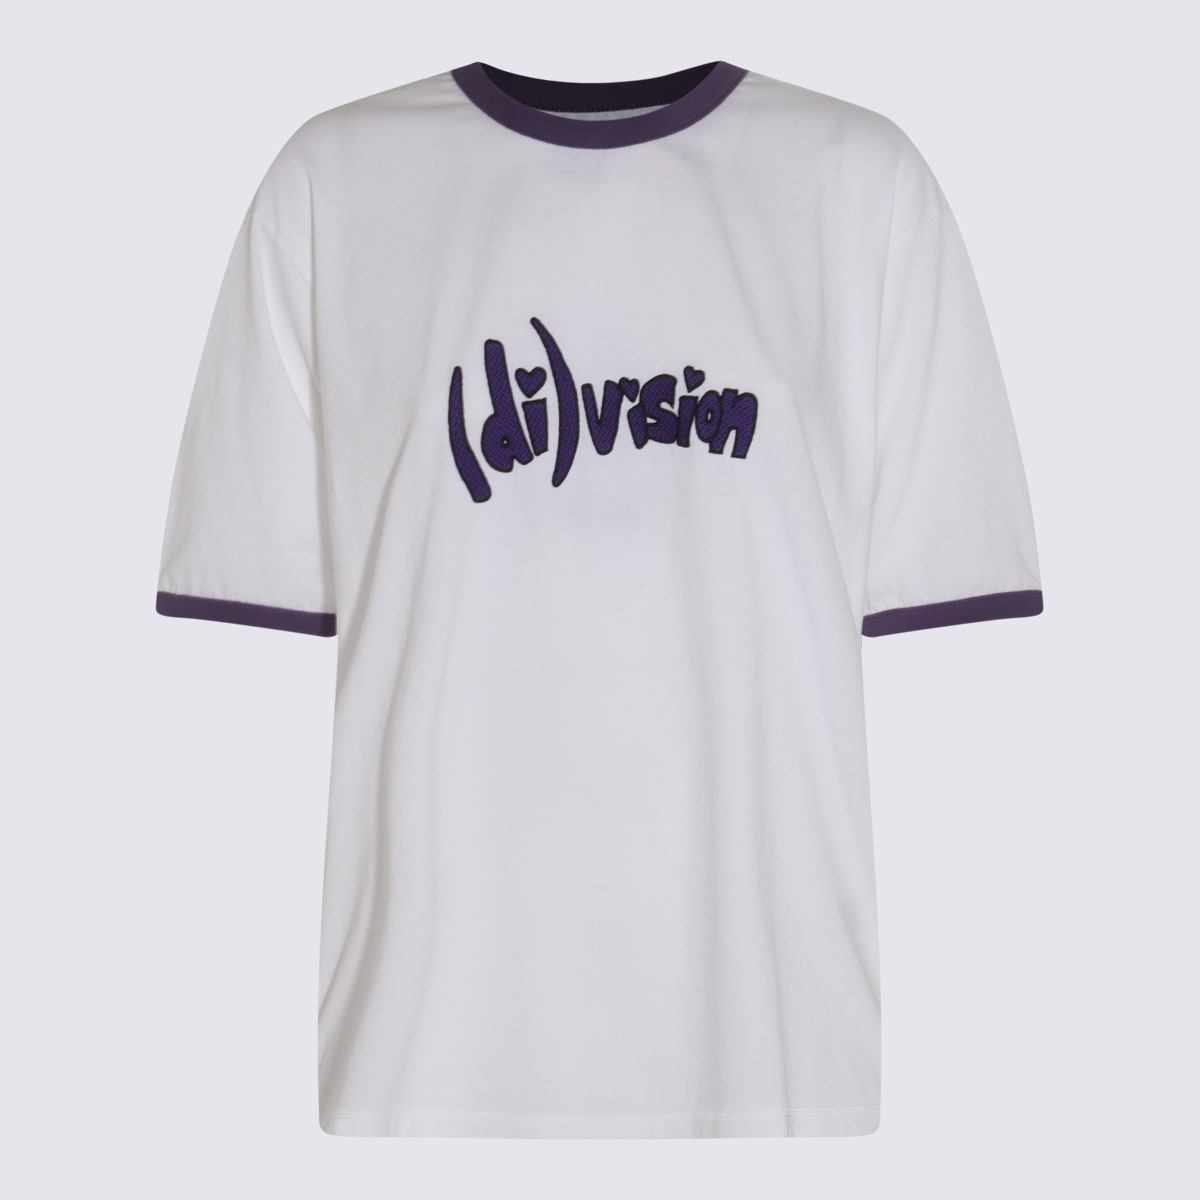 Shop (d)ivision White Cotton T-shirt